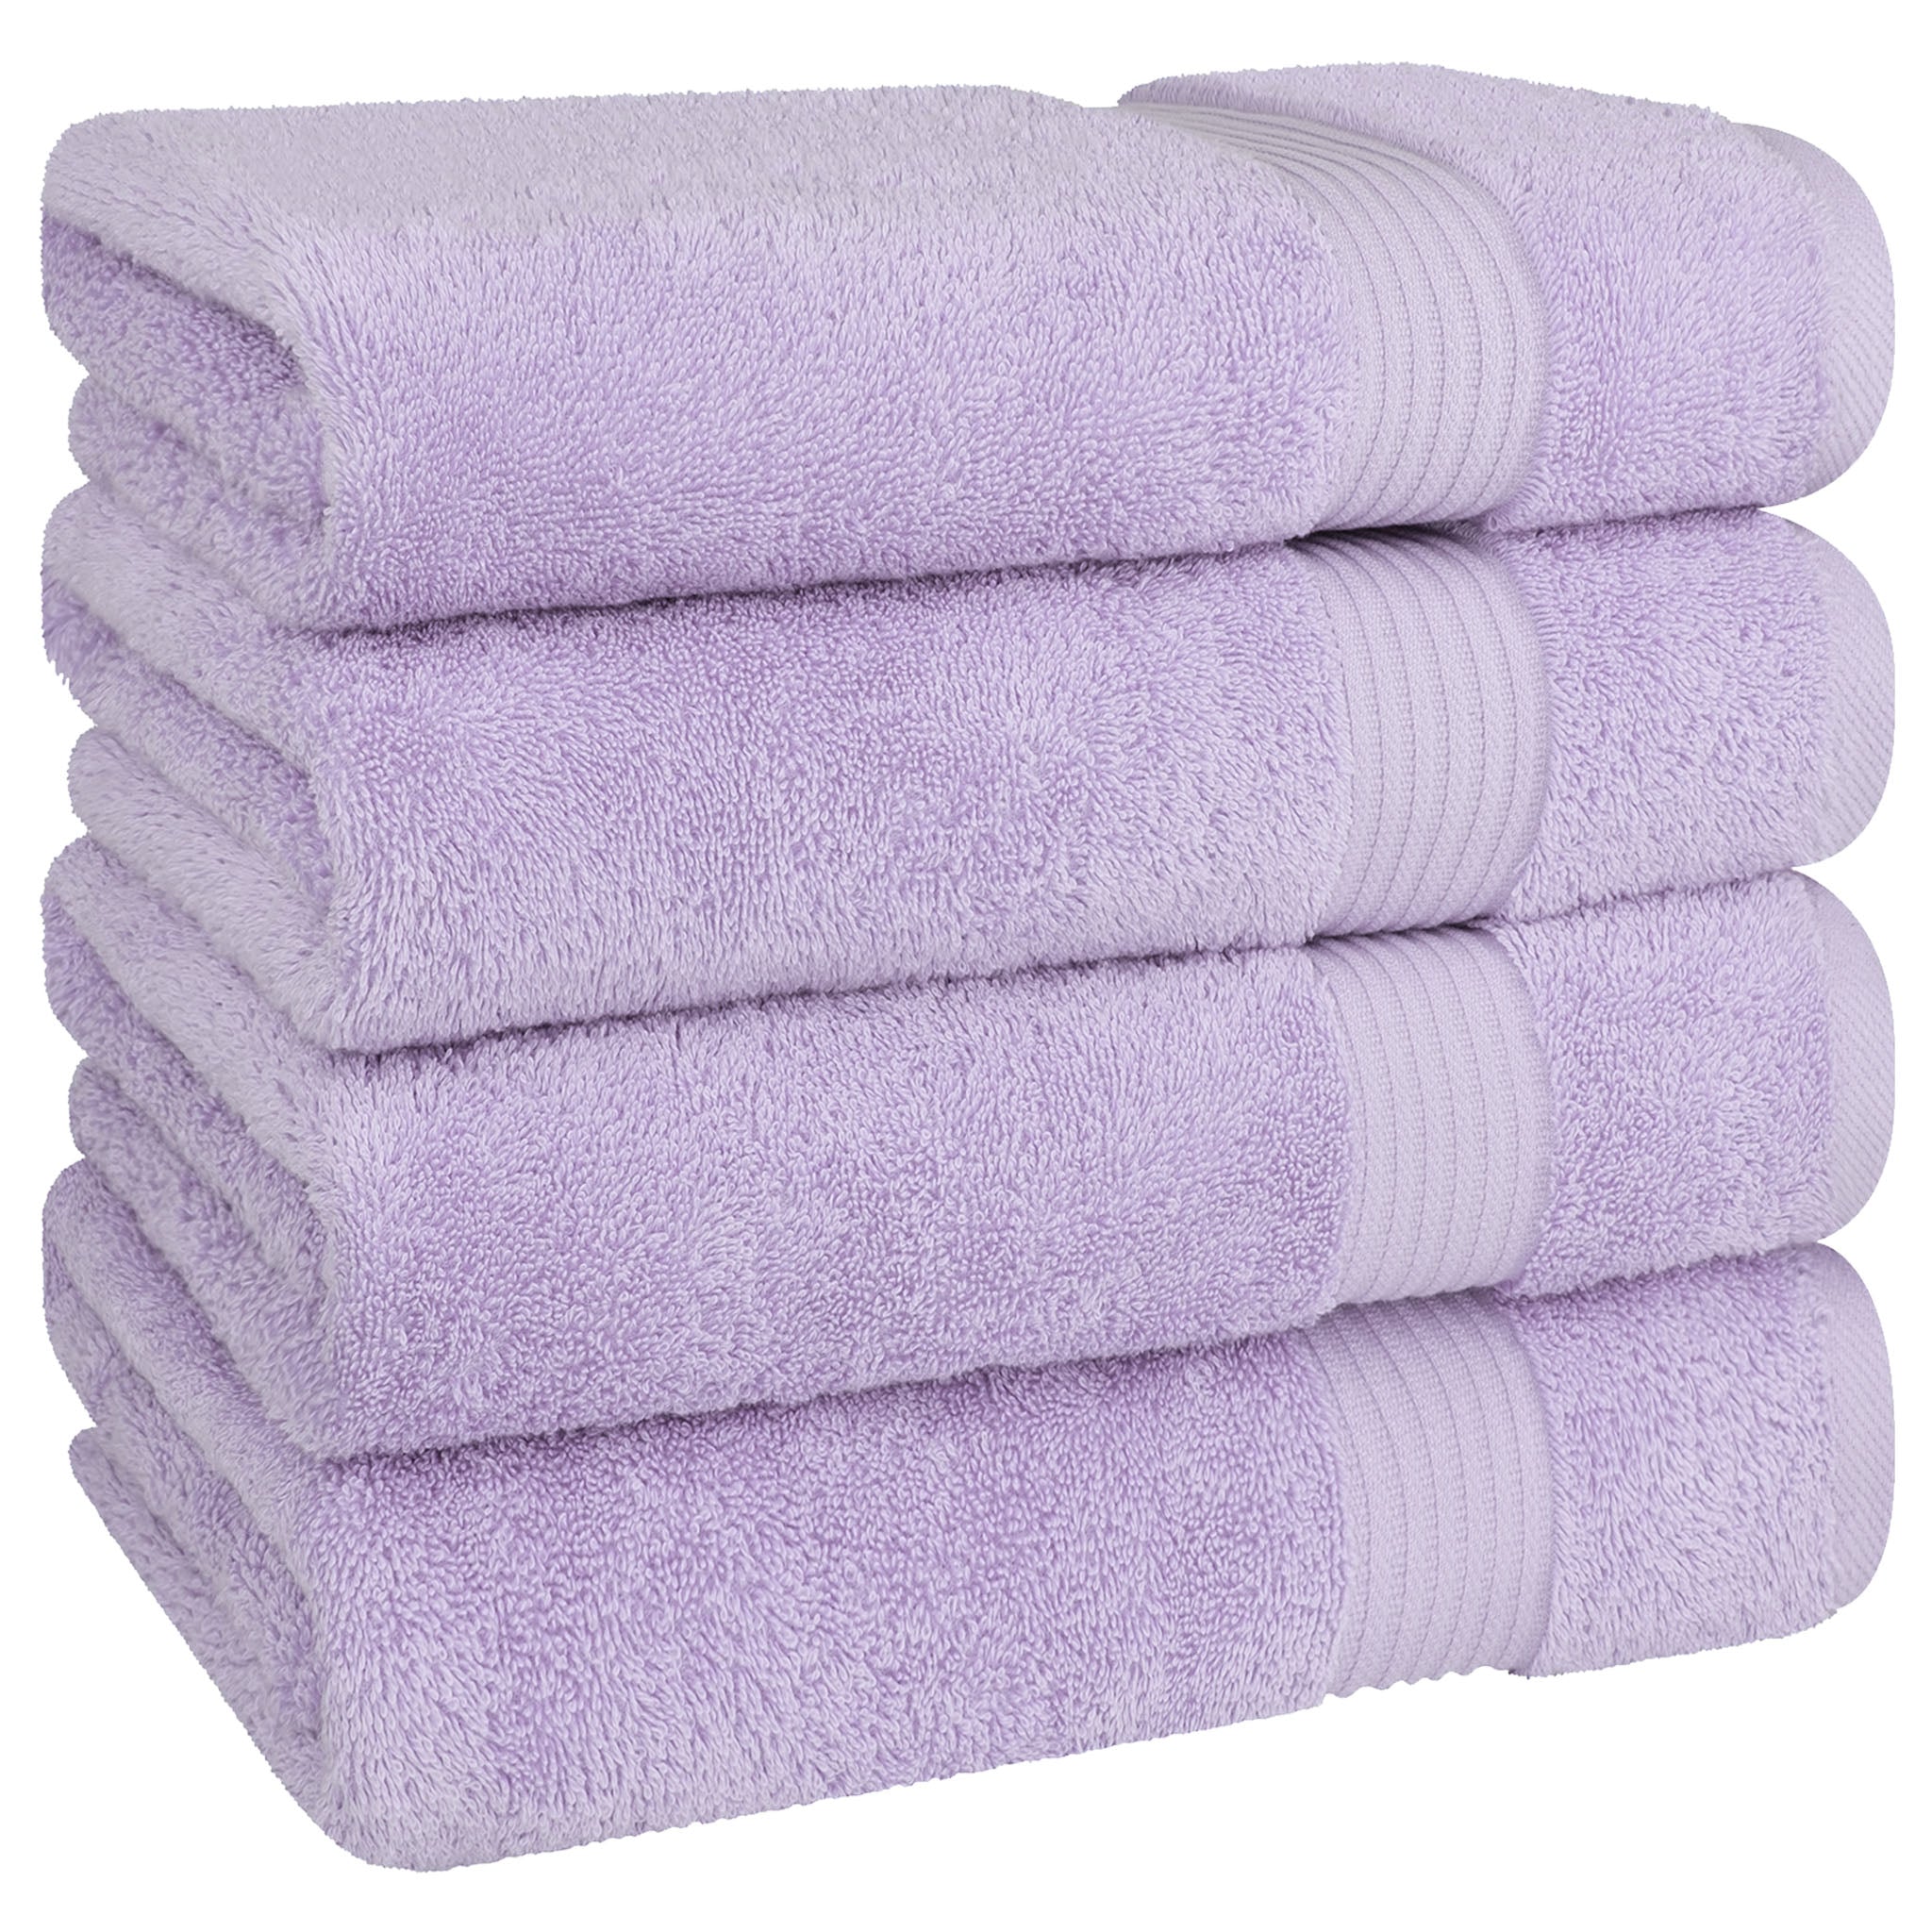 American Soft Linen Bekos 100% Cotton Turkish Towels, 4 Piece Bath Towel Set -lilac-05